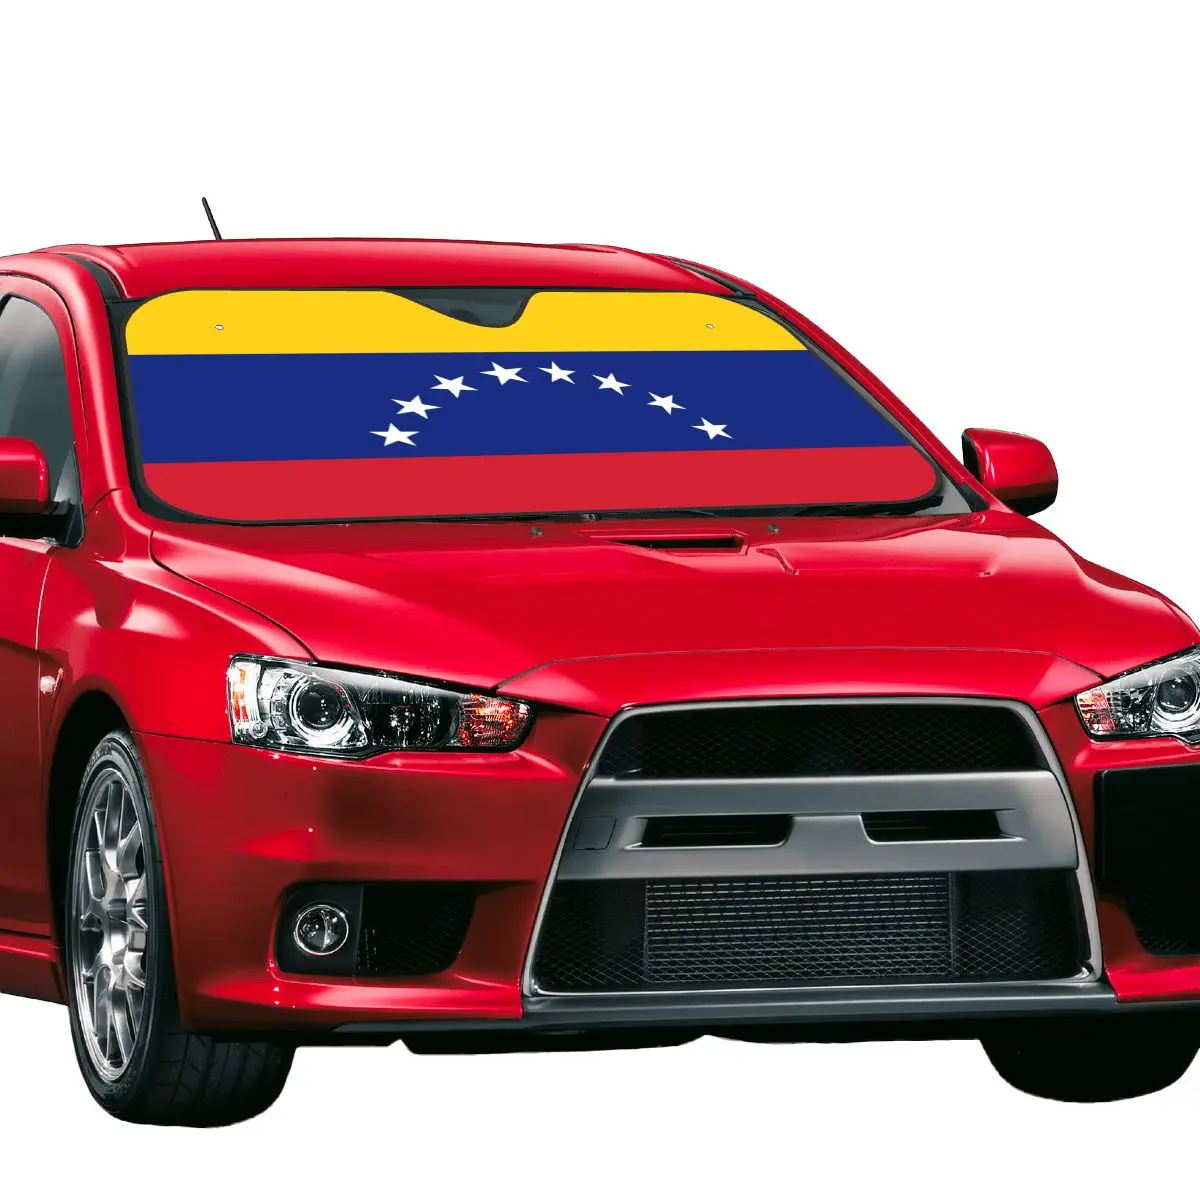 Venezolana Katlanabilir Güneşlik Ön Cam 76x140cm Venezuela Bayrağı Alüminyum Folyo Araba Pencere Cam Kapak Ön Cam Kapak